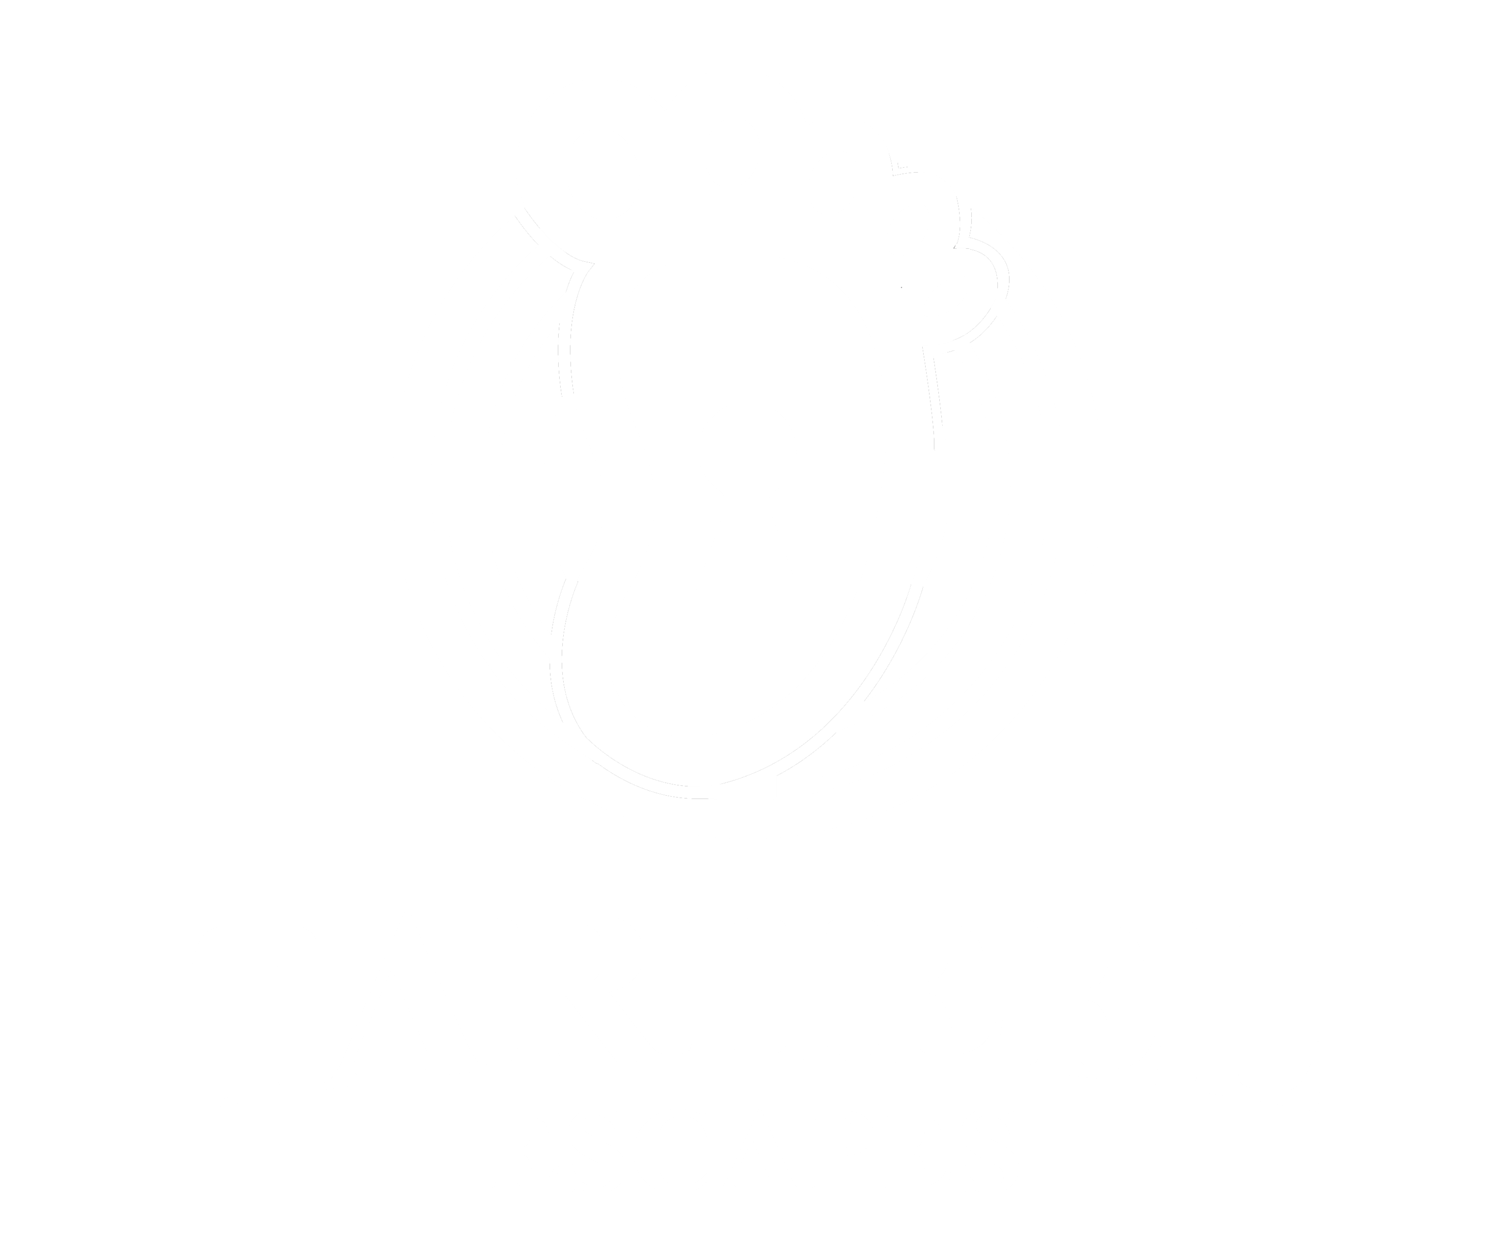 Tar Heel Escapes